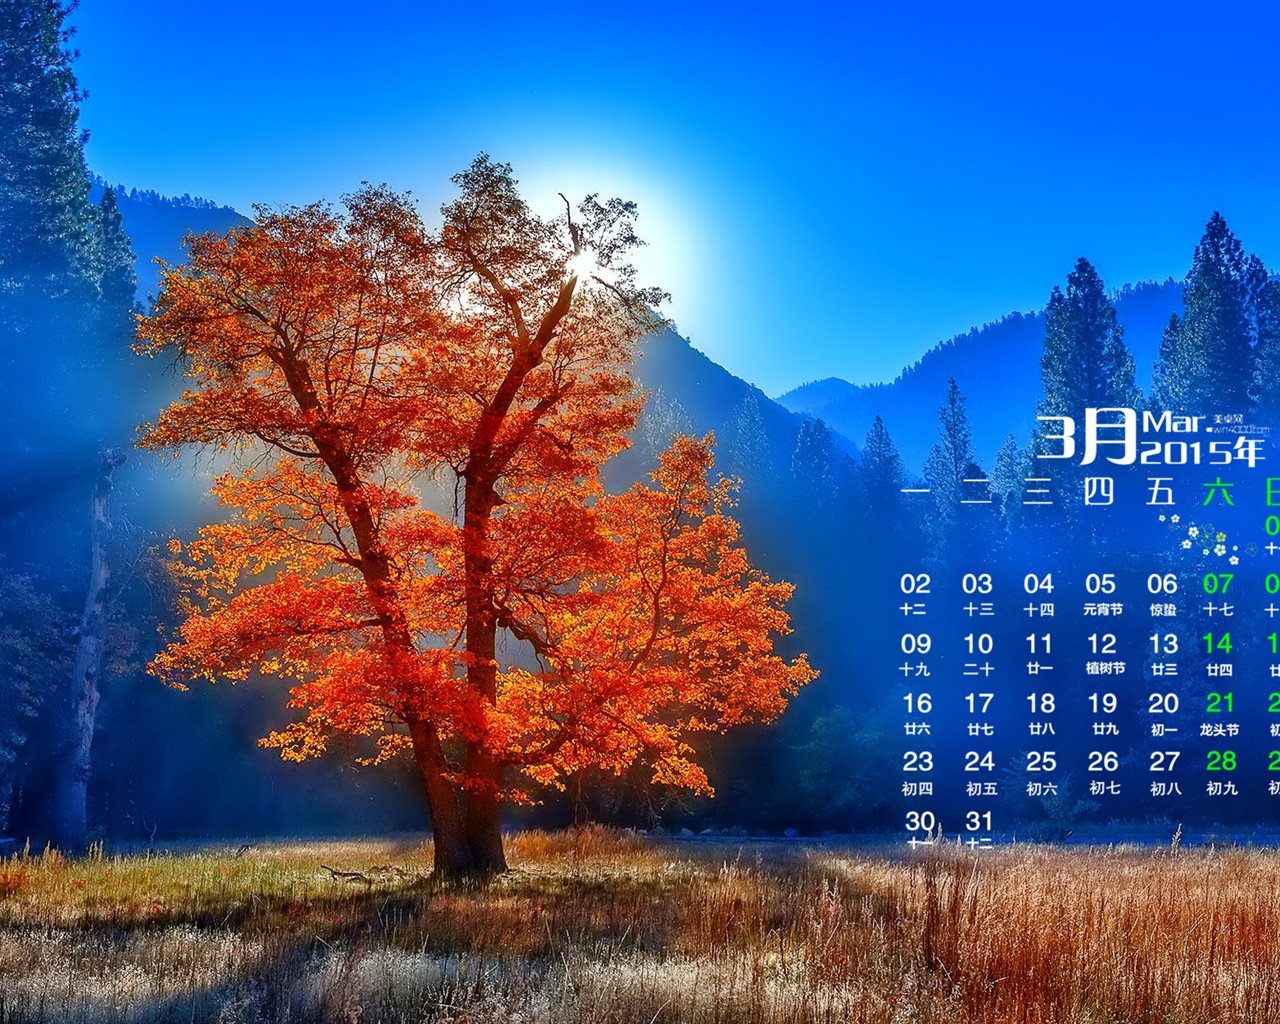 March 2015 Calendar wallpaper (1) #16 - 1280x1024